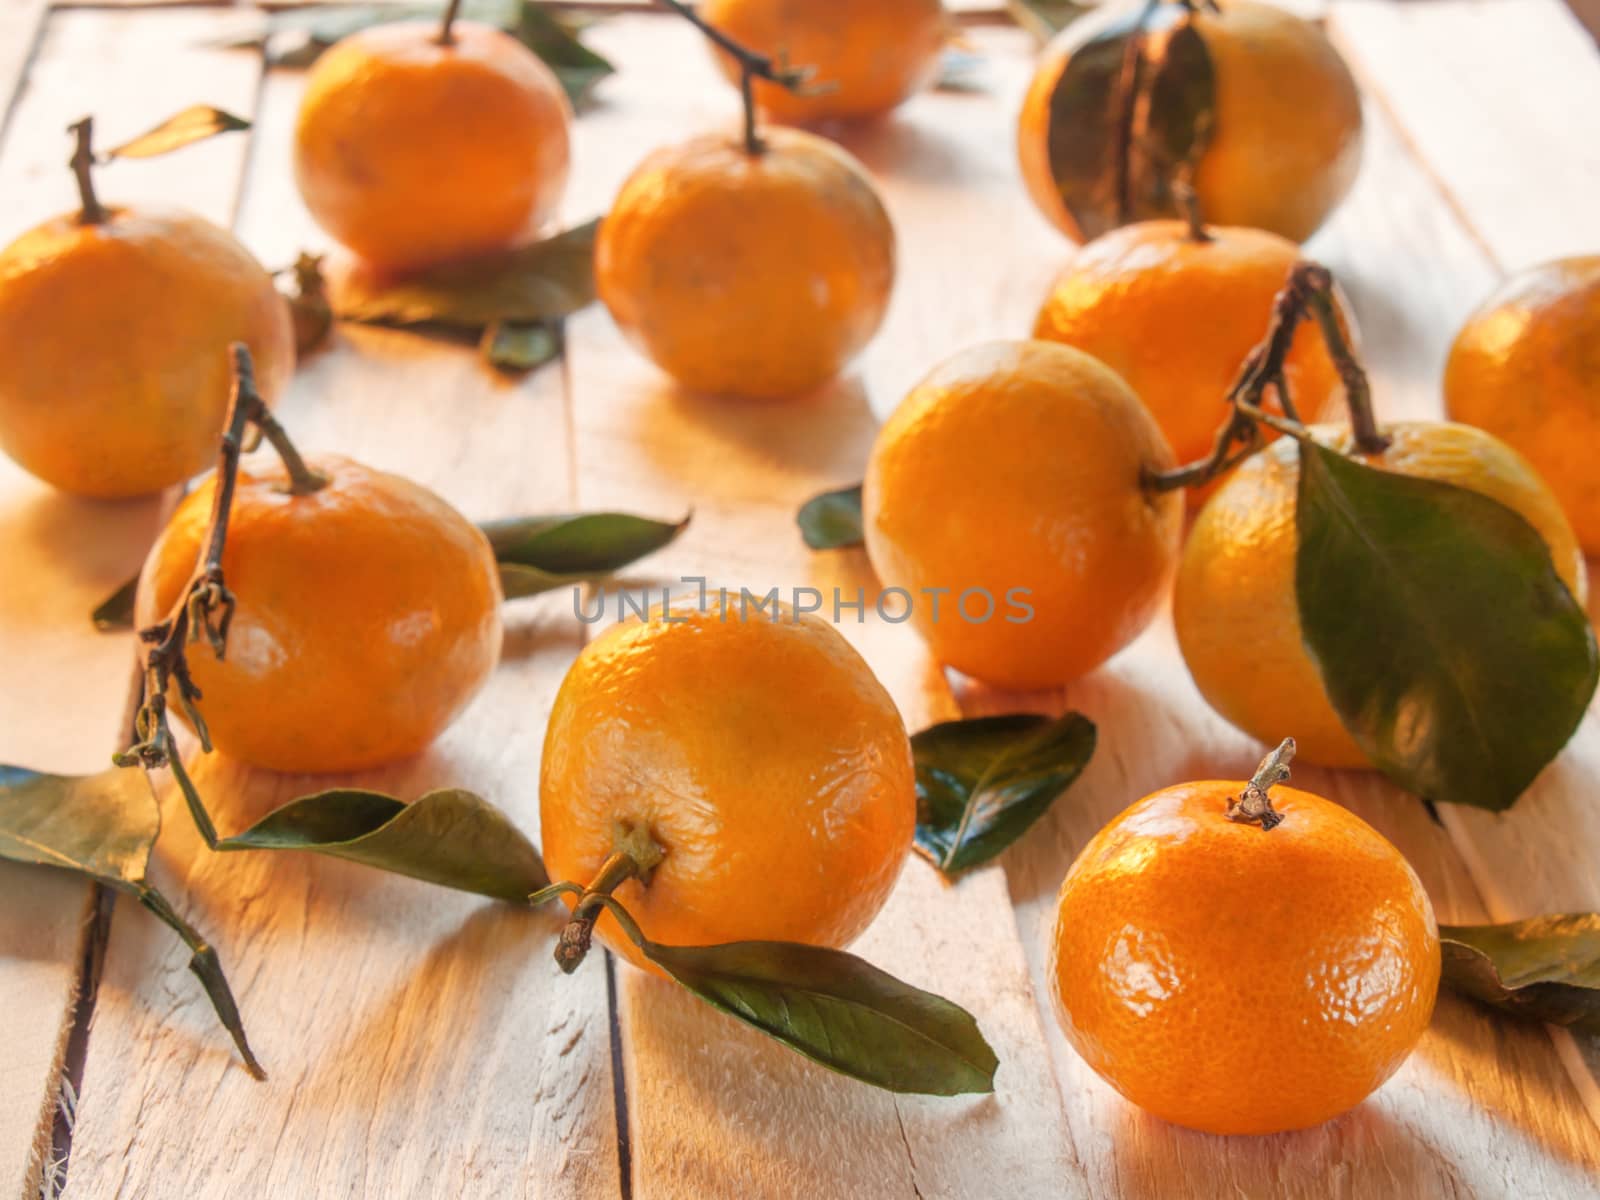 Beautiful, juicy, sweet, orange tangerines lie on the wooden table